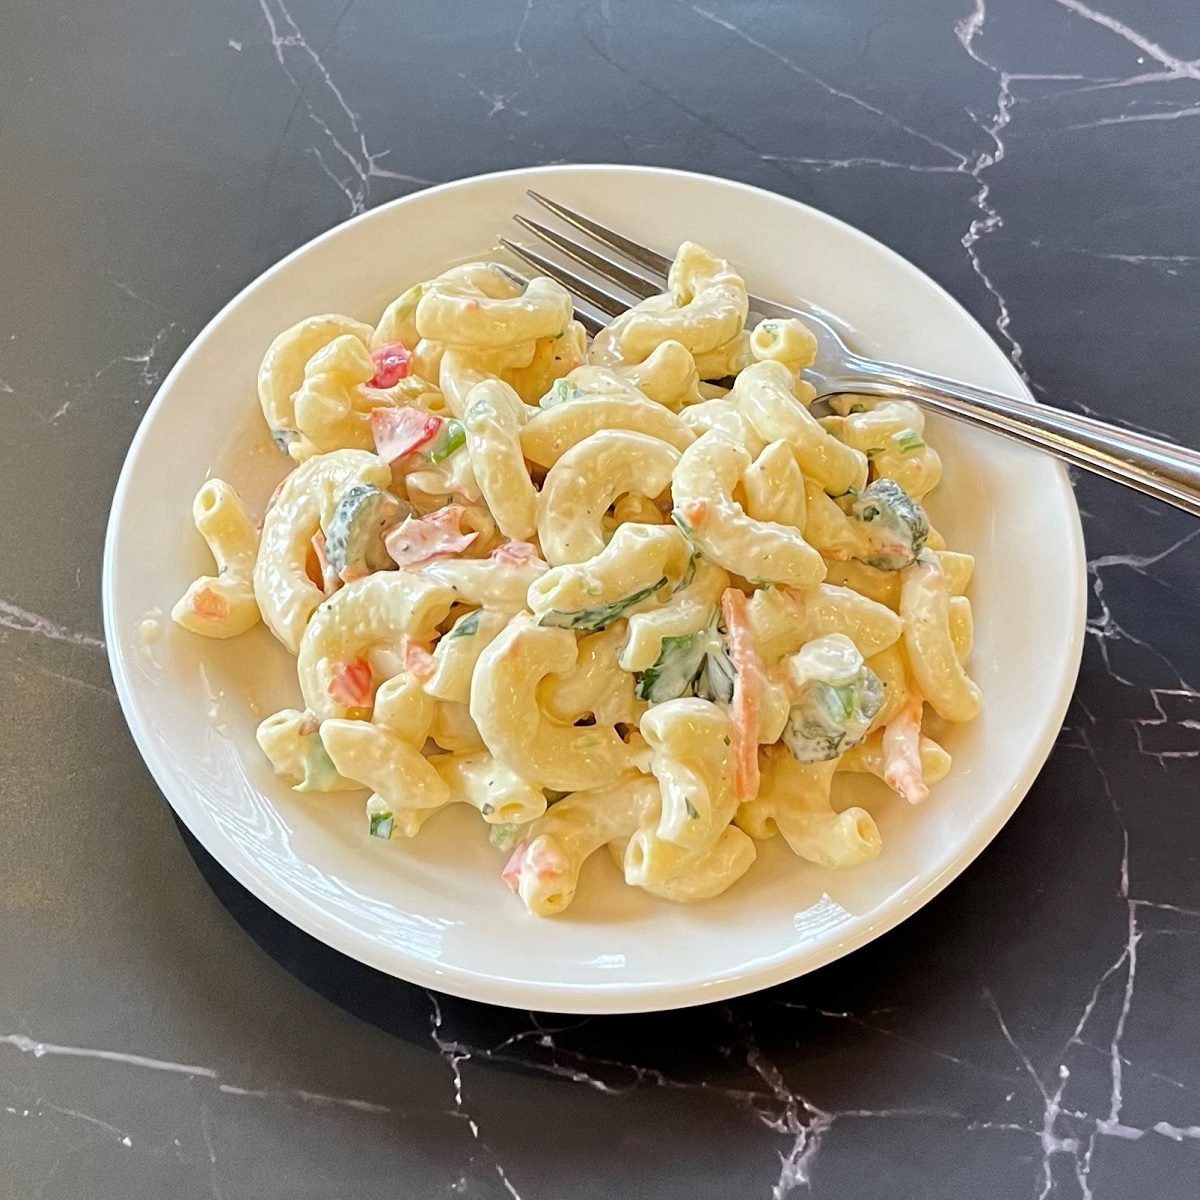 Salade de macaroni - Classique